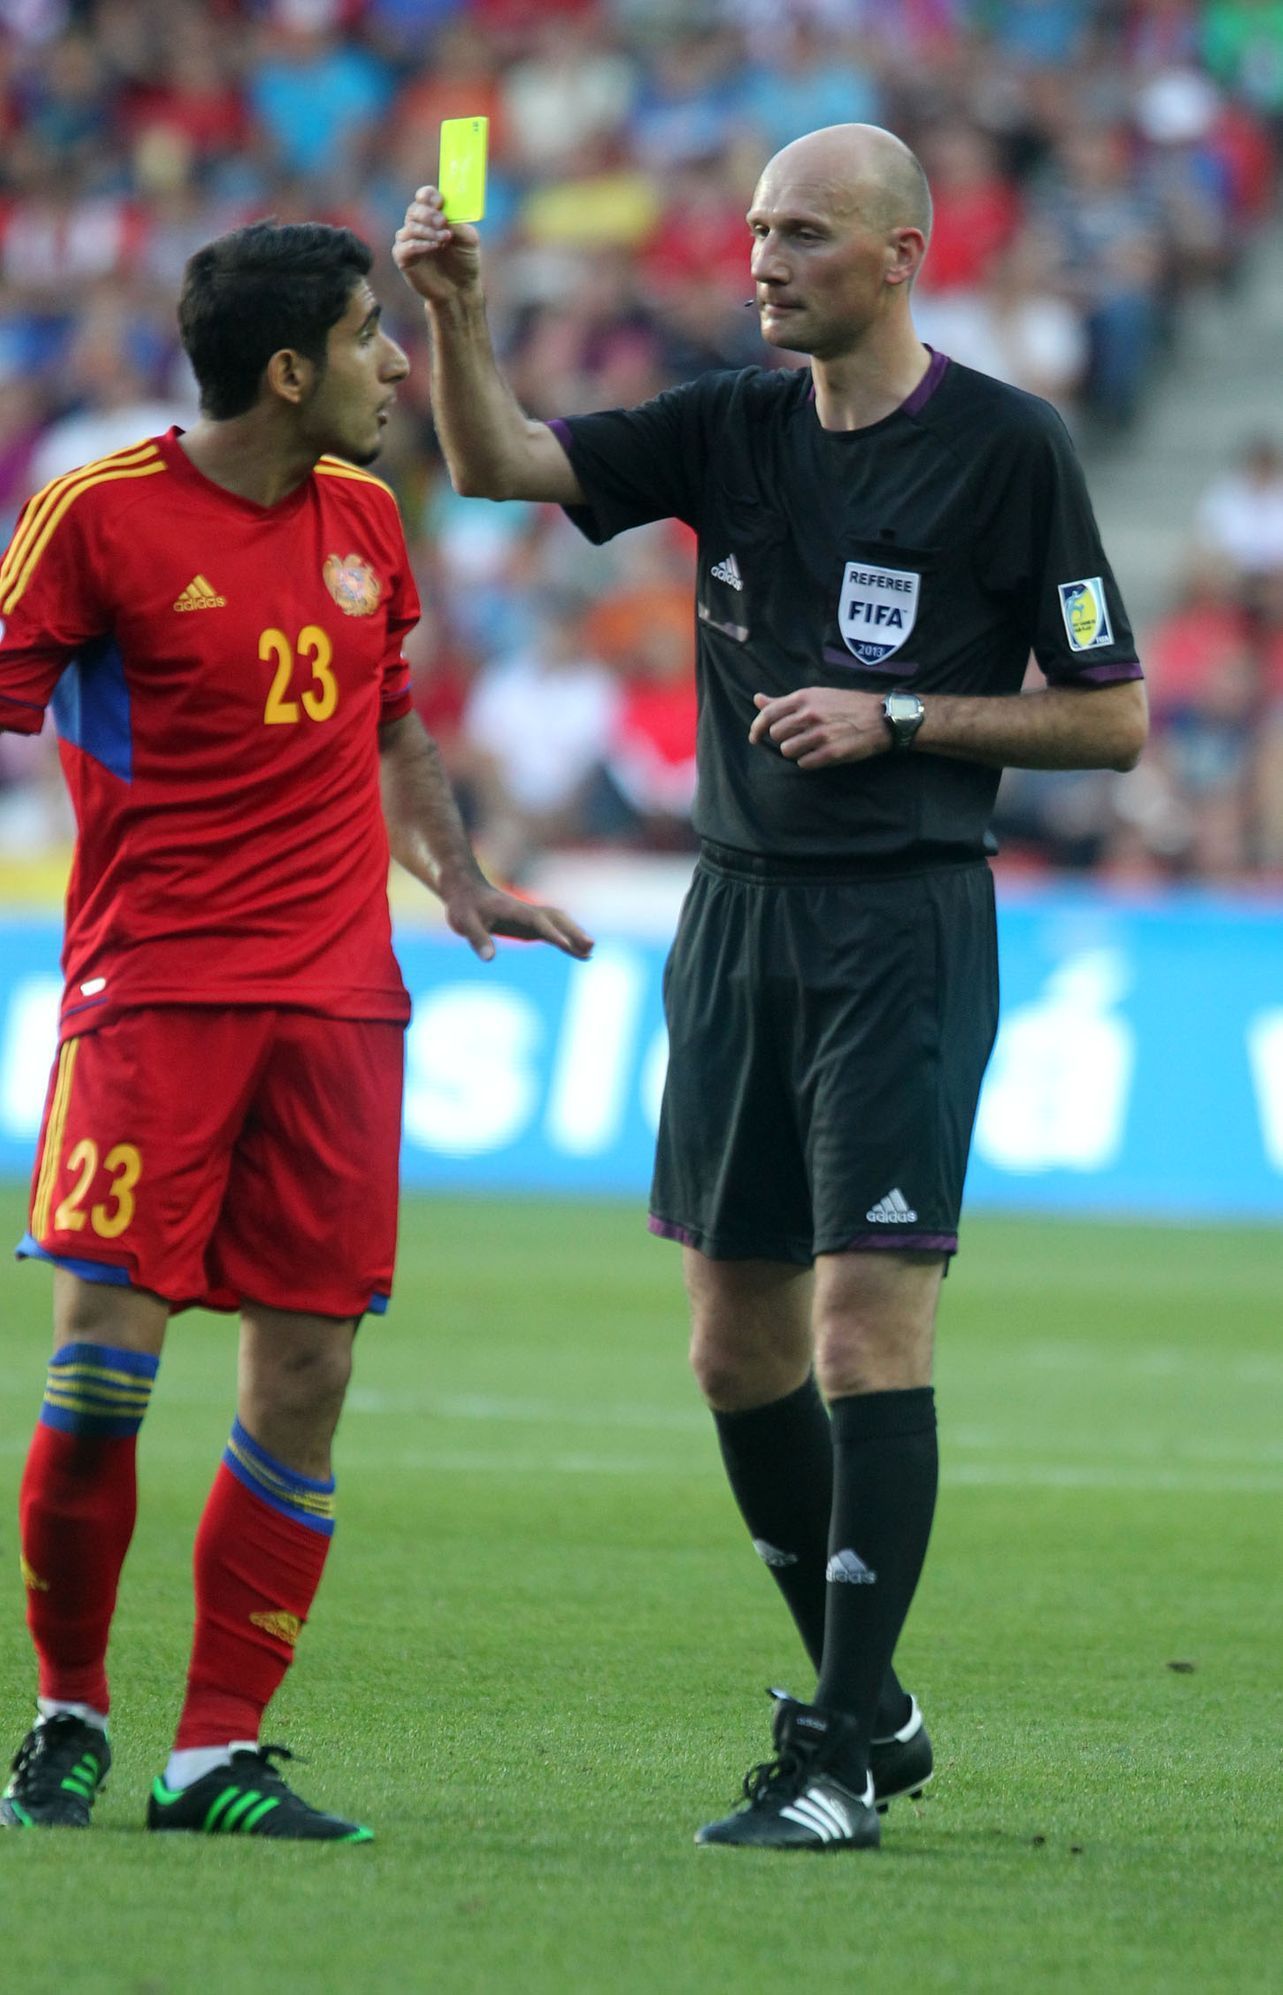 Fotbal, kvalifikace MS, Česko - Arménie: Aras Ozbiliz dostává žlutou kartu